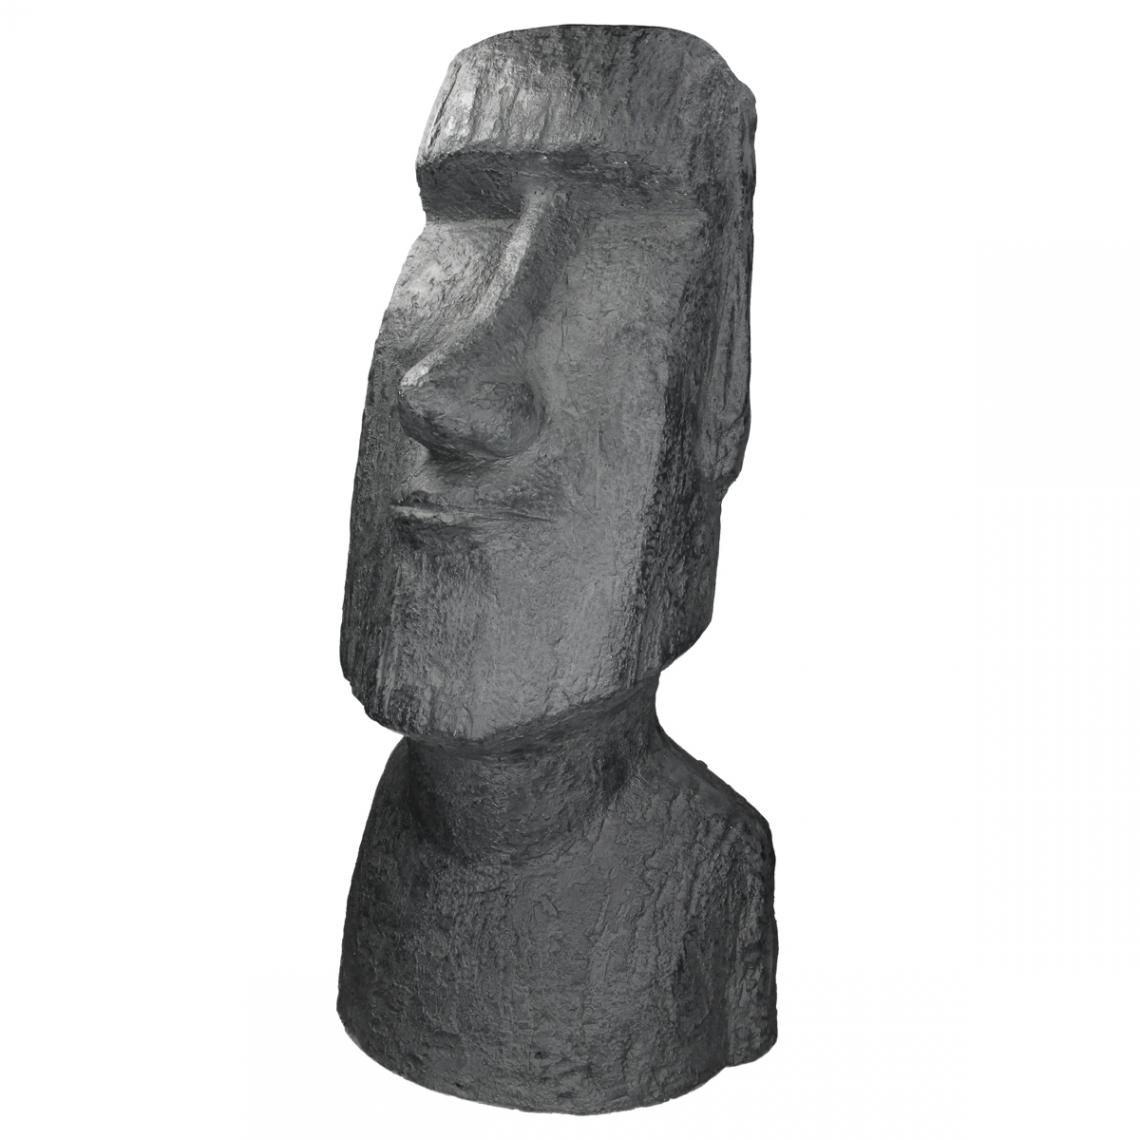 Ecd Germany - Statue Île de Pâques Moai Rapa Nui 28x25x56cm sculpture jardin tête anthracite - Petite déco d'exterieur